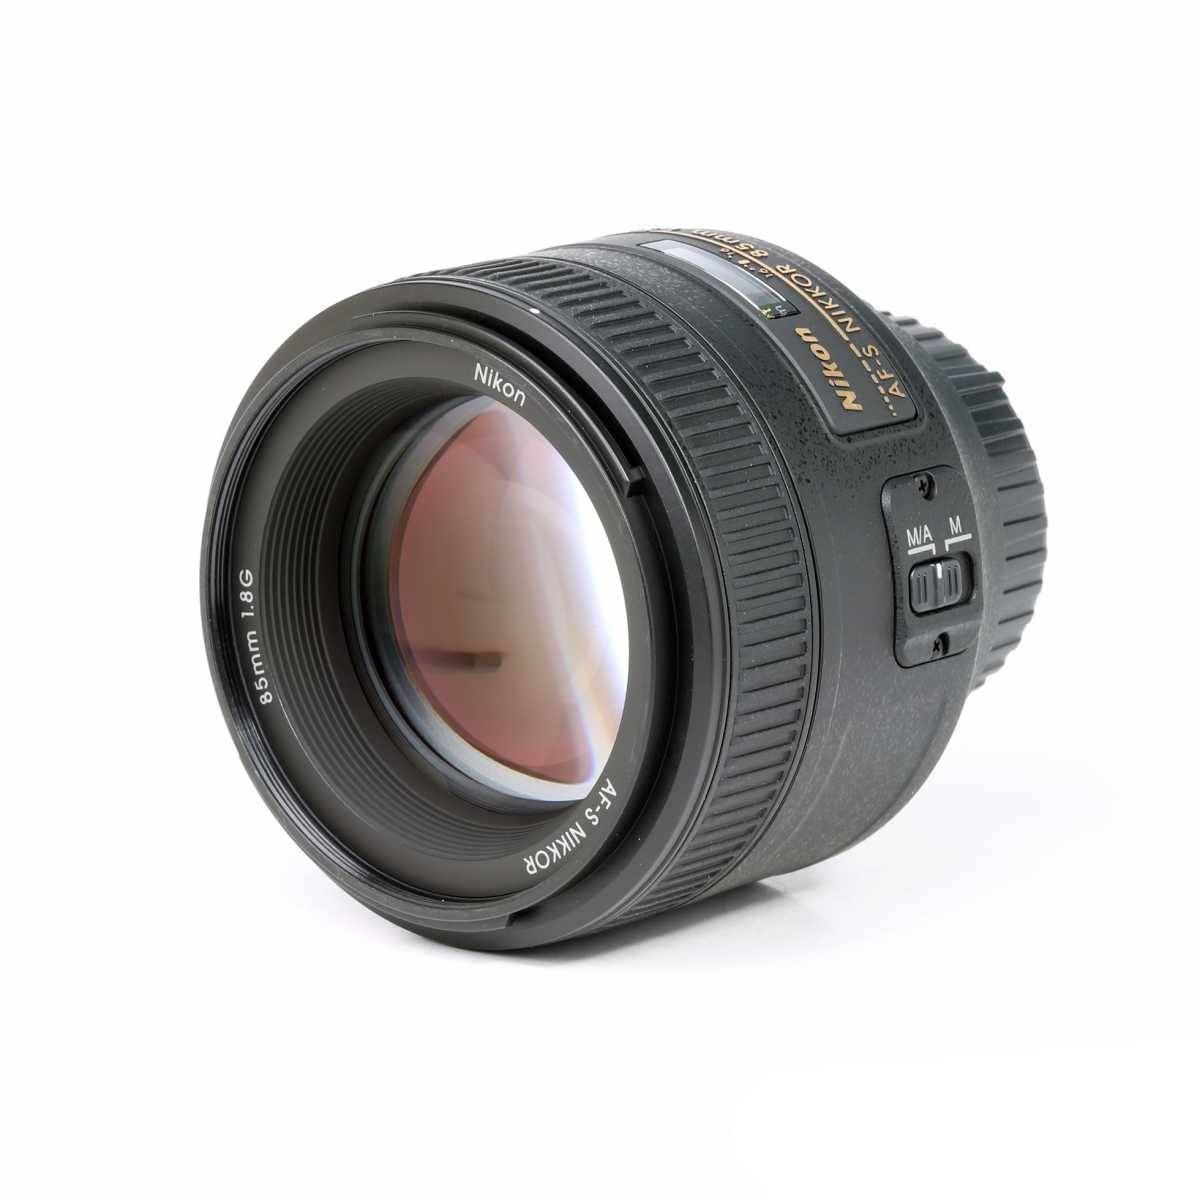 Nikon 85mm f1.8 G AF-S NIKKOR Short-telephoto Prime Lens